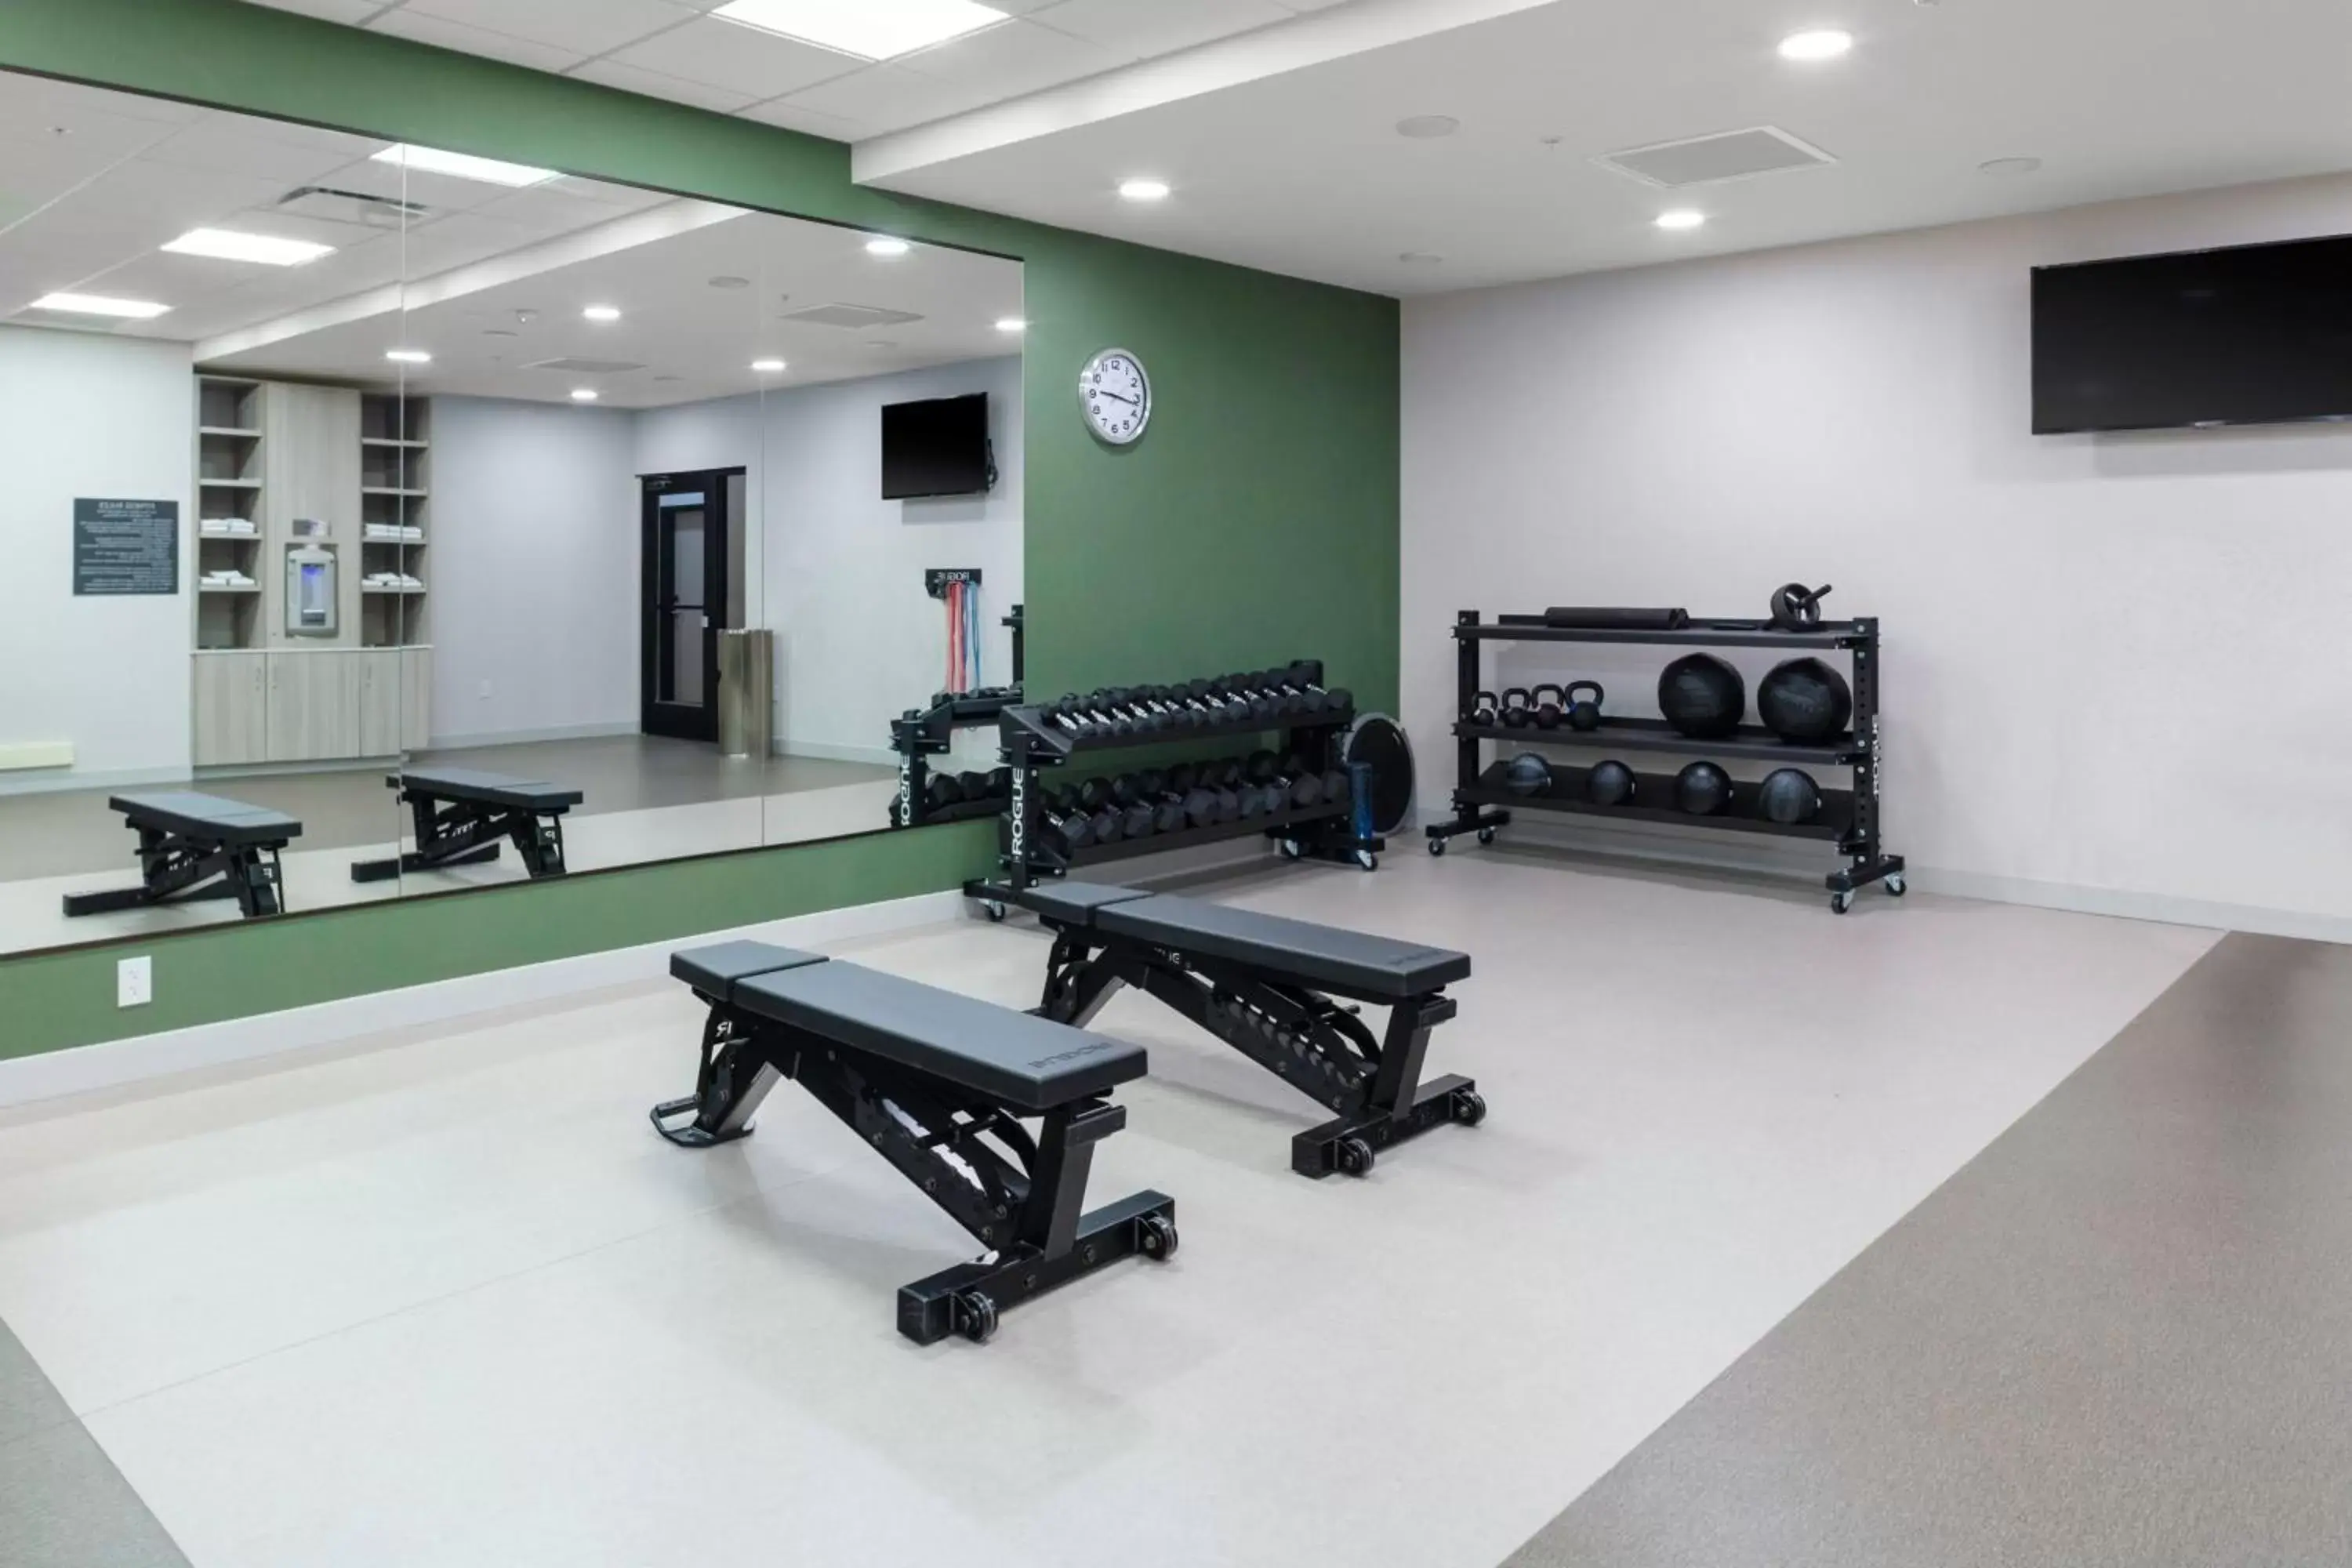 Fitness centre/facilities, Fitness Center/Facilities in Fairfield by Marriott Inn & Suites Buckeye Verrado